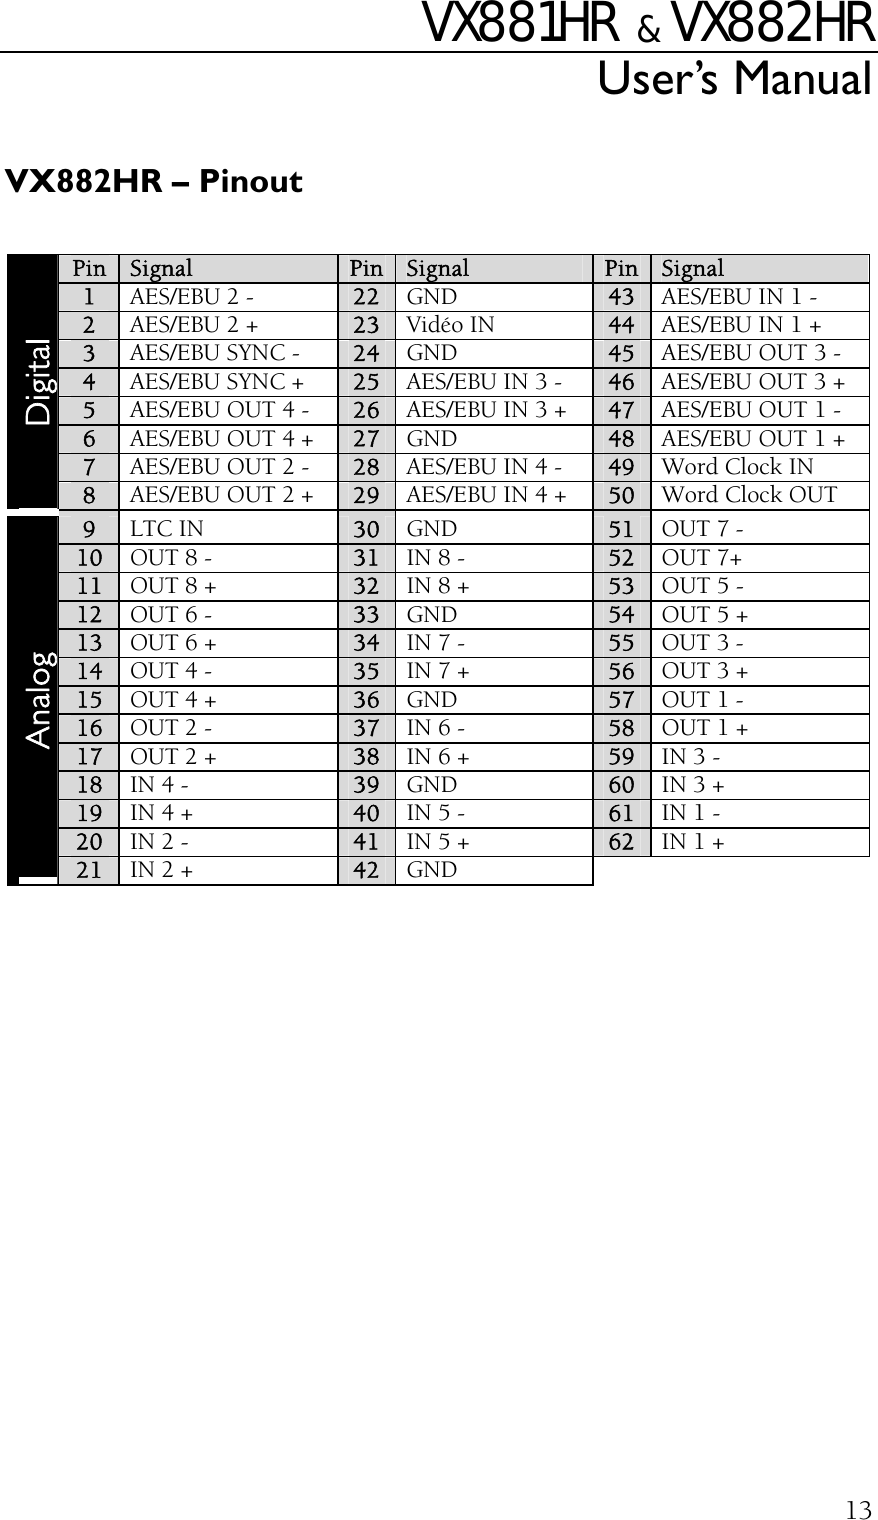 VX881HR   &amp;  VX882HR User’s Manual  13 VX882HR – Pinout  Pin  Signal  Pin  Signal Pin  Signal 1 AES/EBU 2 -  22  GND  43  AES/EBU IN 1 - 2 AES/EBU 2 + 23  Vidéo IN  44  AES/EBU IN 1 + 3 AES/EBU SYNC - 24  GND  45  AES/EBU OUT 3 - 4 AES/EBU SYNC + 25  AES/EBU IN 3 -  46  AES/EBU OUT 3 + 5 AES/EBU OUT 4 - 26  AES/EBU IN 3 +  47  AES/EBU OUT 1 - 6 AES/EBU OUT 4 + 27  GND  48  AES/EBU OUT 1 + 7 AES/EBU OUT 2 - 28  AES/EBU IN 4 -  49  Word Clock IN Digital 8 AES/EBU OUT 2 + 29  AES/EBU IN 4 +  50  Word Clock OUT 9 LTC IN 30  GND  51  OUT 7 - 10 OUT 8 - 31  IN 8 -  52  OUT 7+ 11 OUT 8 + 32  IN 8 +  53  OUT 5 -  12 OUT 6 - 33  GND  54  OUT 5 + 13 OUT 6 + 34  IN 7 -  55  OUT 3 - 14 OUT 4 -  35  IN 7 +  56  OUT 3 + 15 OUT 4 +  36  GND  57  OUT 1 - 16  OUT 2 -  37  IN 6 -  58  OUT 1 + 17  OUT 2 +  38  IN 6 +  59  IN 3 - 18  IN 4 -  39  GND  60  IN 3 + 19  IN 4 +  40  IN 5 -  61  IN 1 - 20  IN 2 -  41  IN 5 +  62  IN 1 + Analog 21  IN 2 +  42  GND  